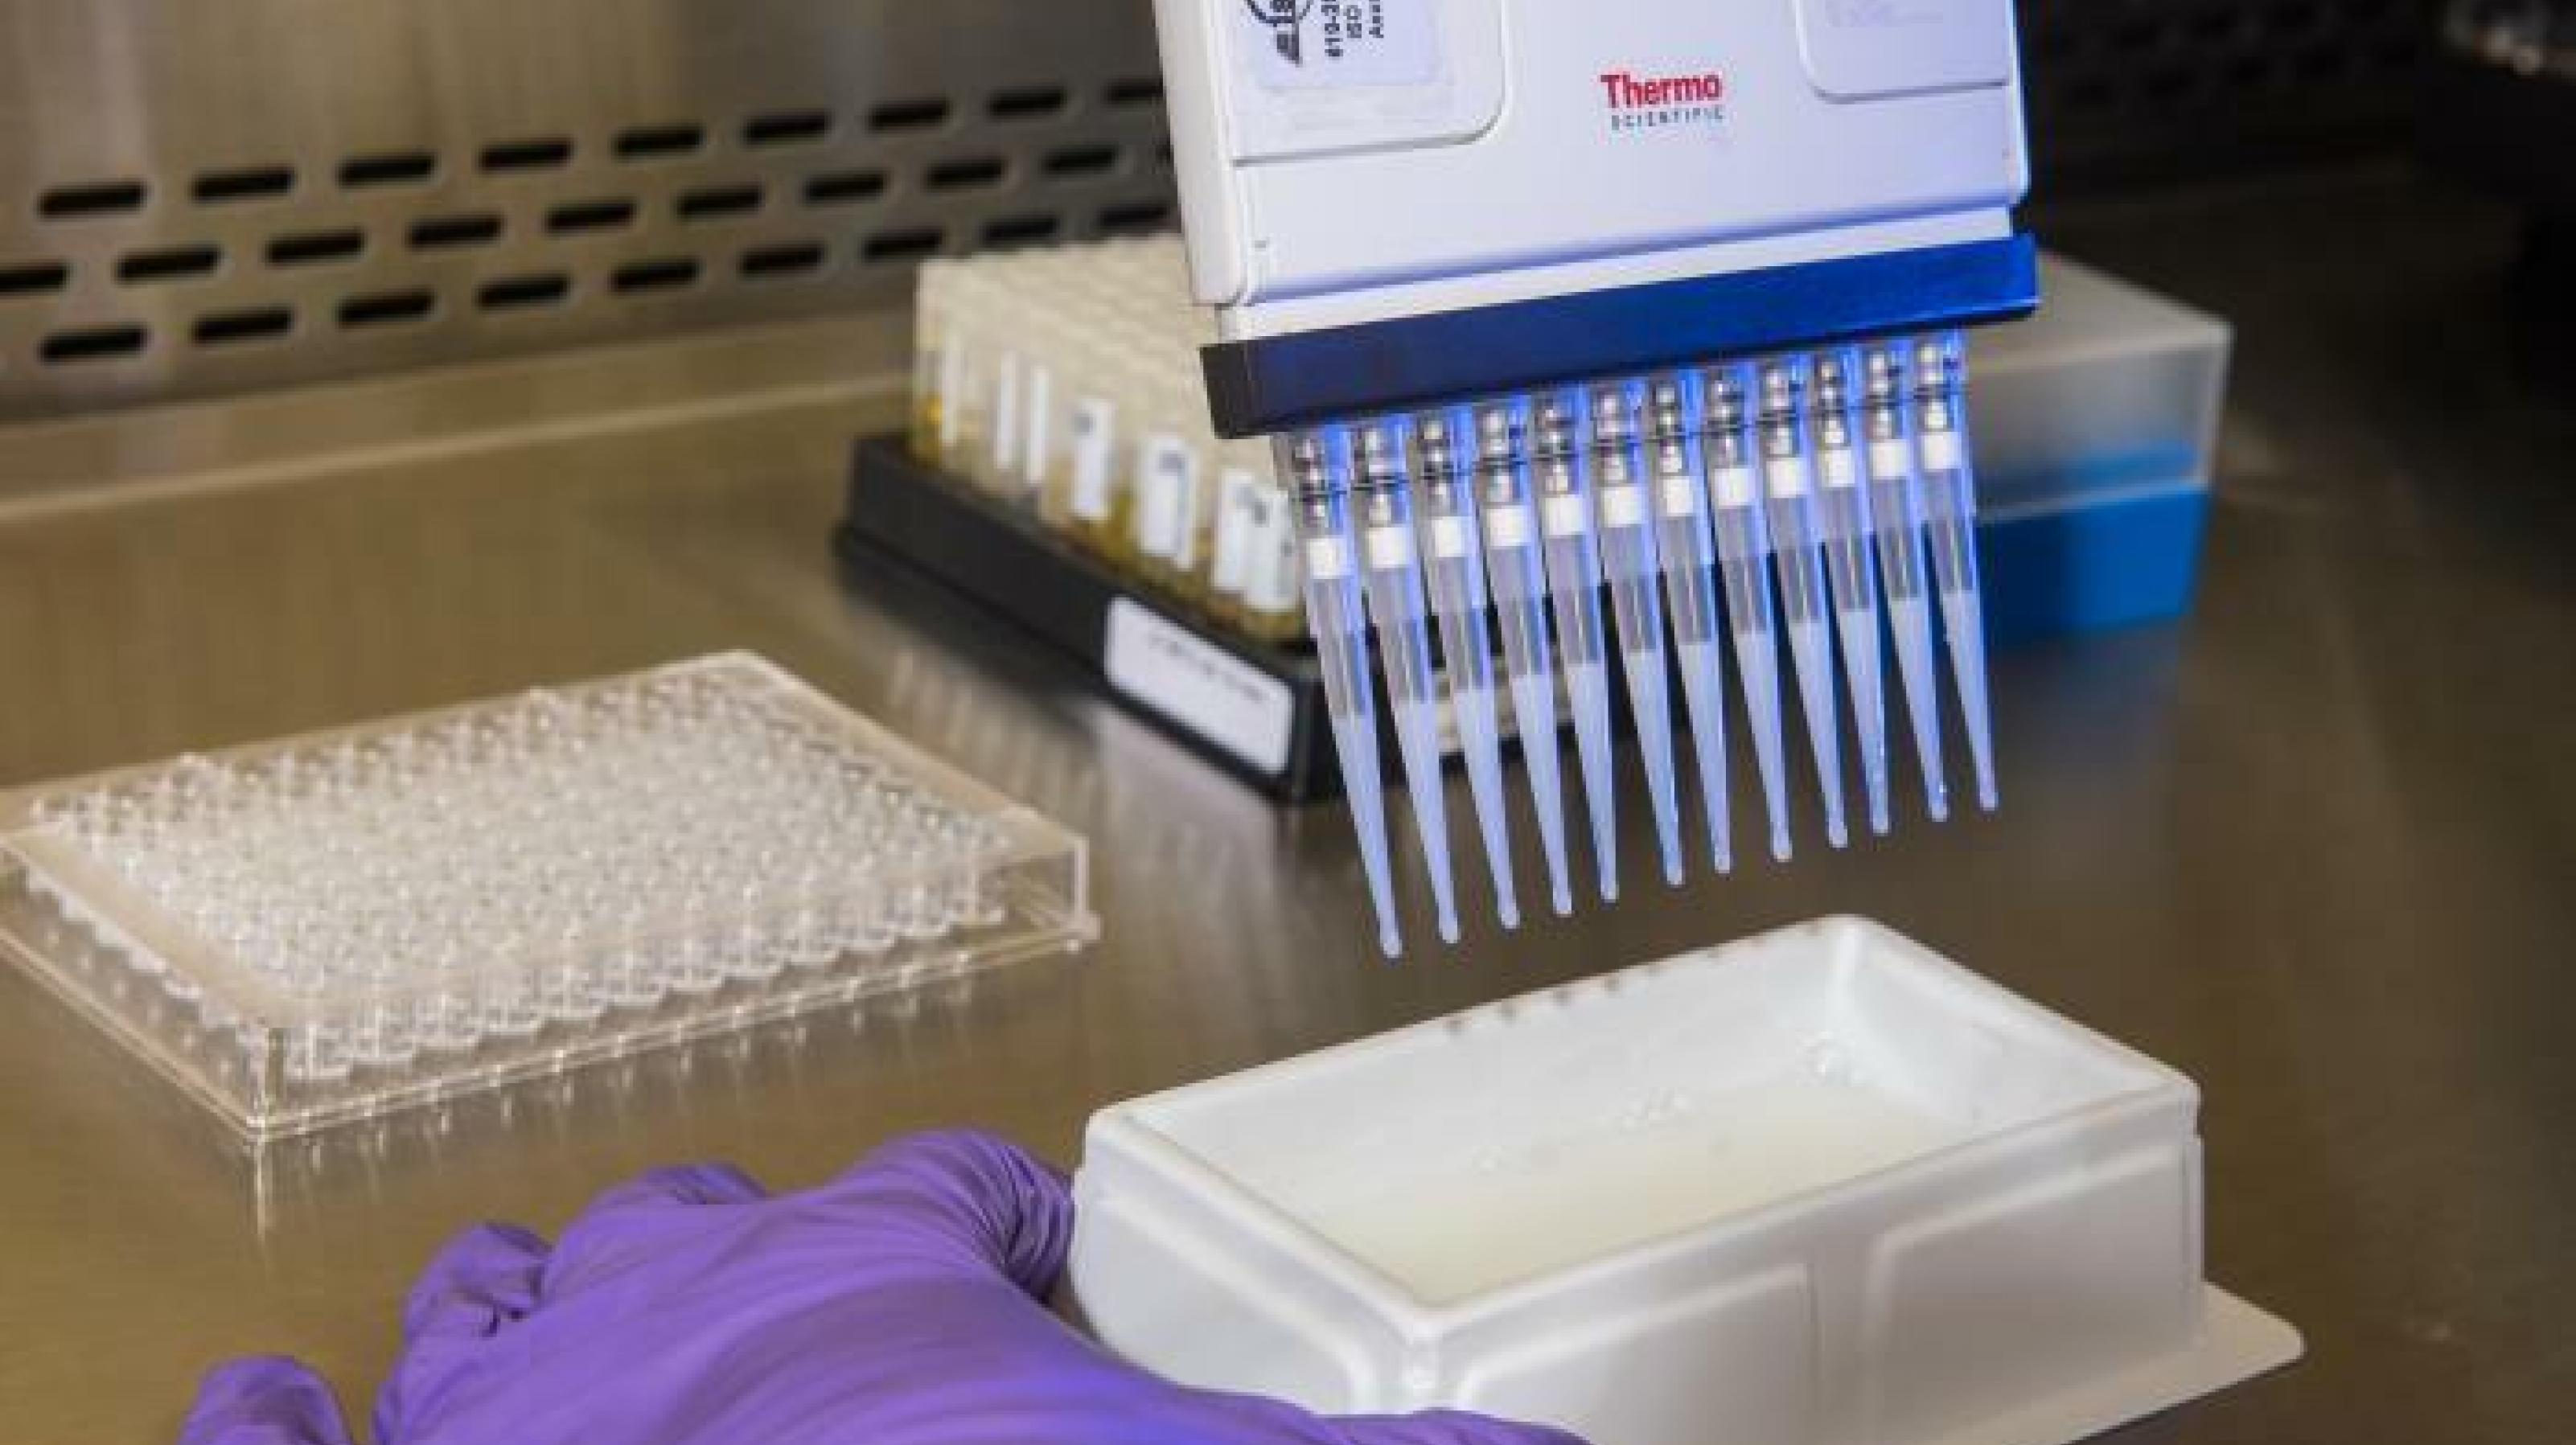 Mit Hilfe einer Pipette wird in einem Labor unter sterilen Bedingungen ein Test auf Antikörper gegen das neue Coronavirus durchgeführt. Zu sehen eine Multipette, mit der kleine Mengen eines Testreagenz in die Probengefäße gegeben werden können.